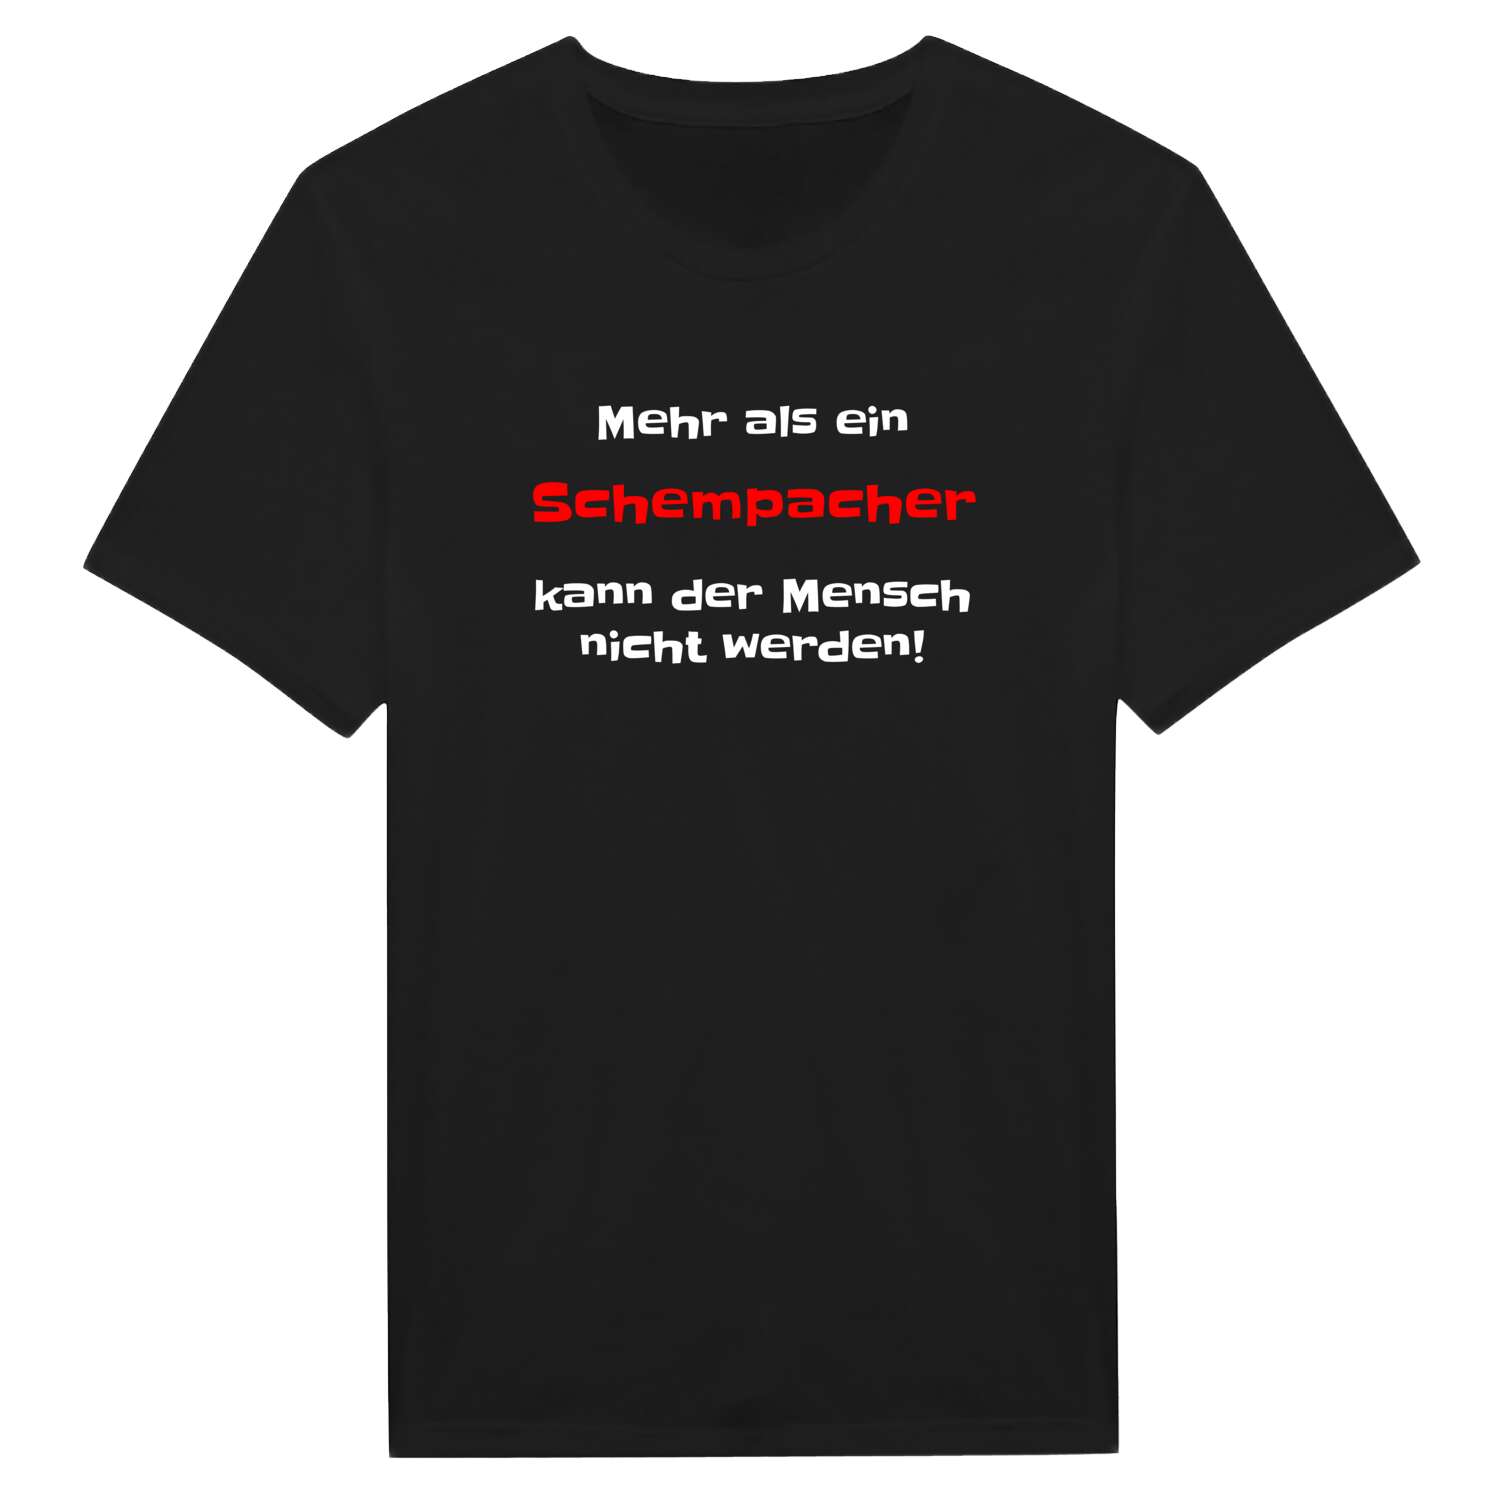 Schempach T-Shirt »Mehr als ein«